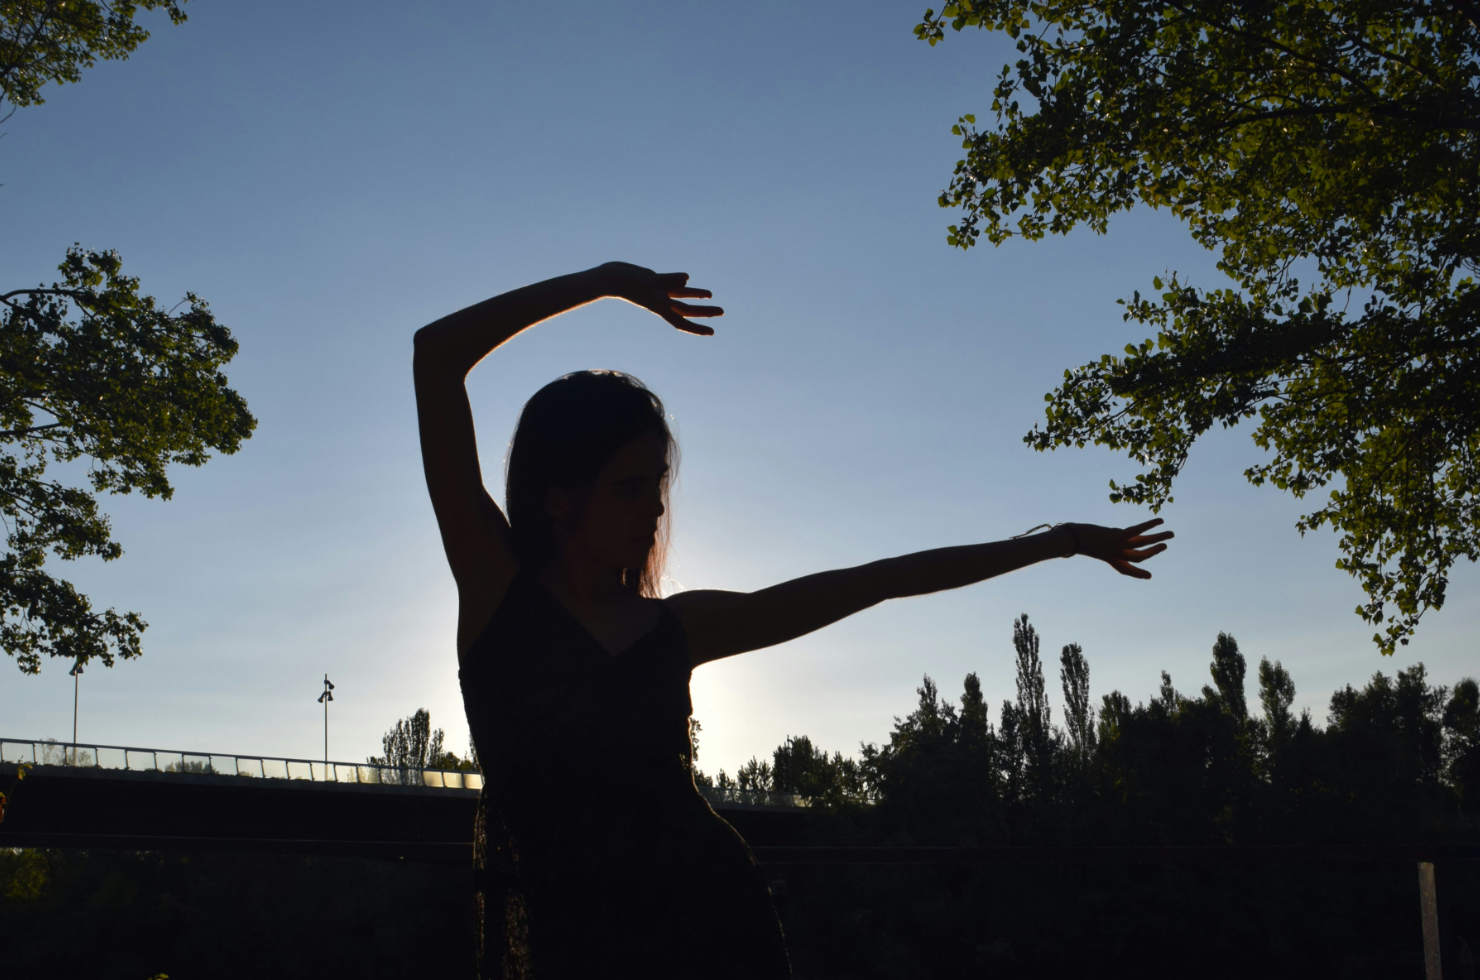 Sara Morán presenta "Gedanken", danza en el escenario Xtra! del Espacio Joven Sur de Valladolid